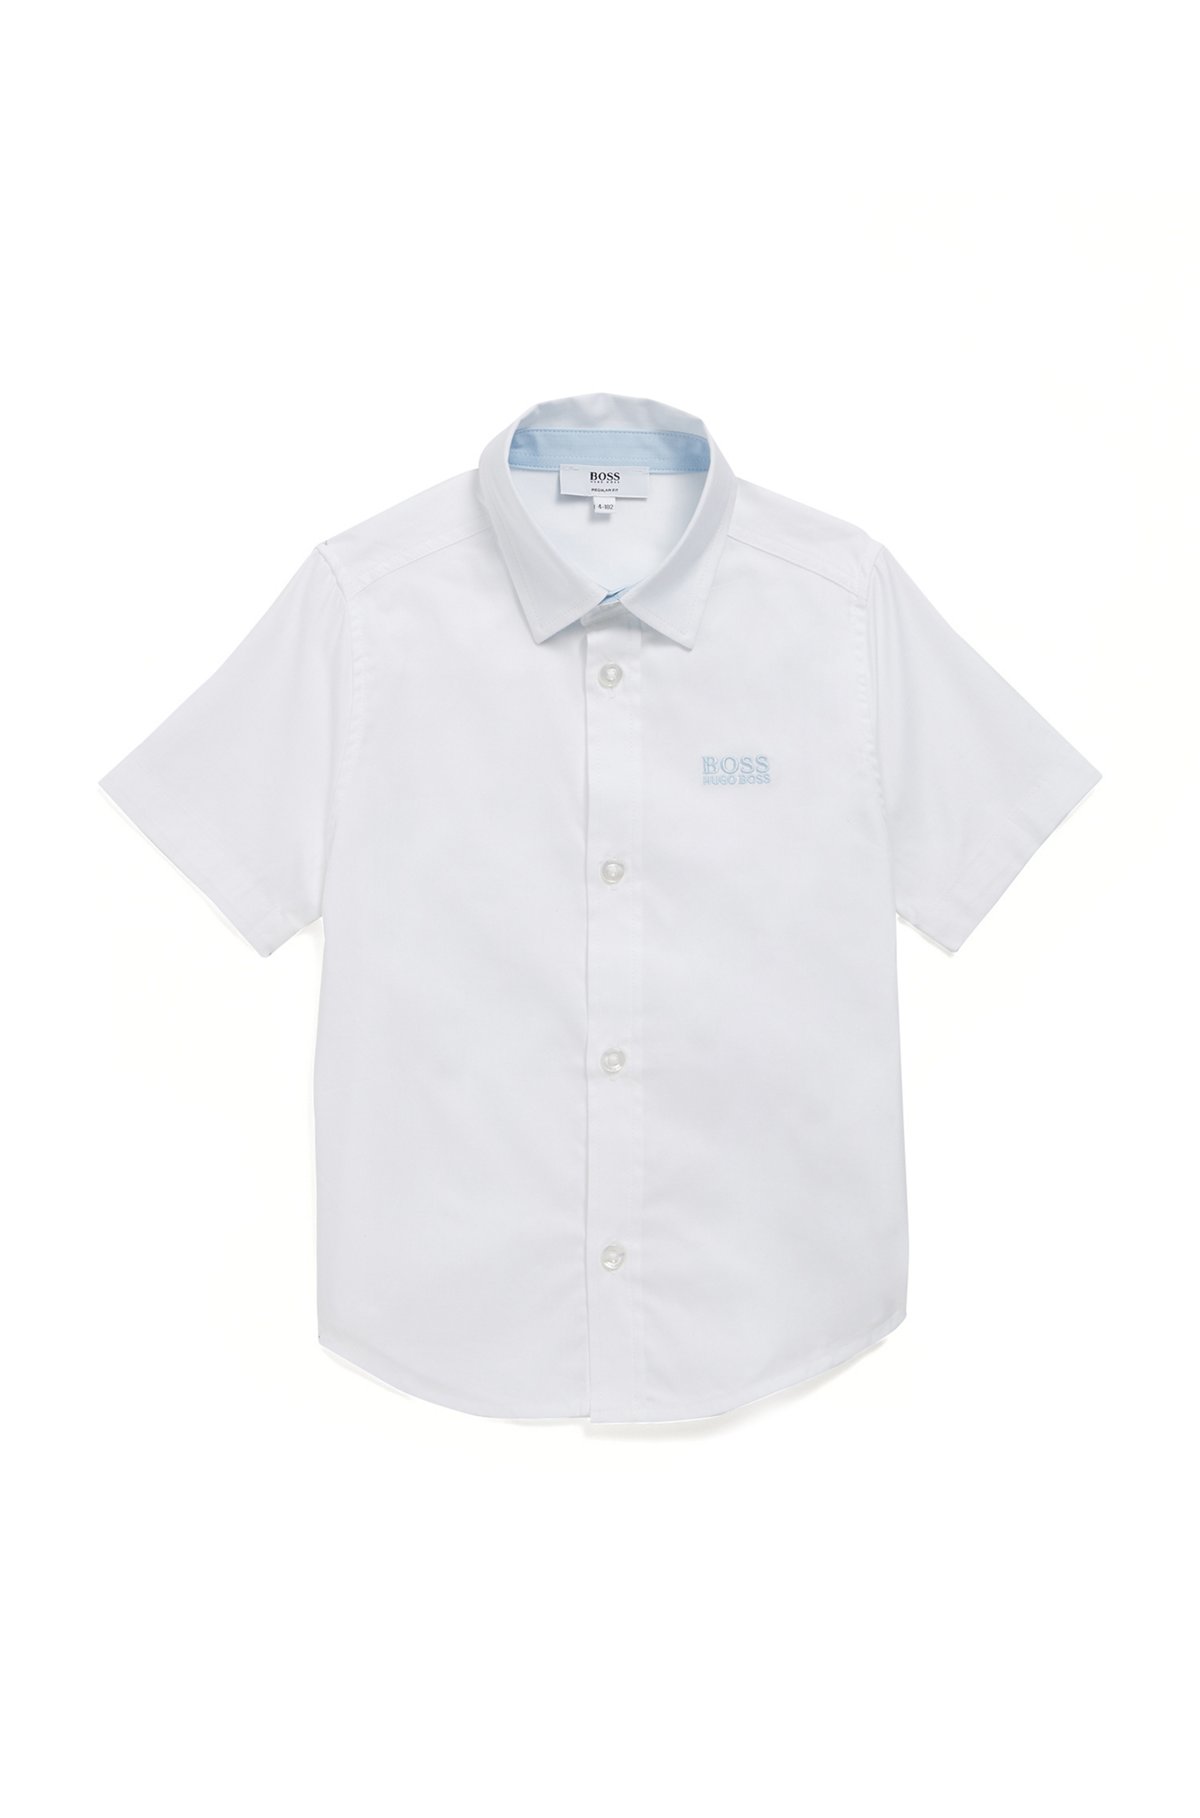 Chemise à manches courtes en coton pour enfant, avec logo brodé, Blanc